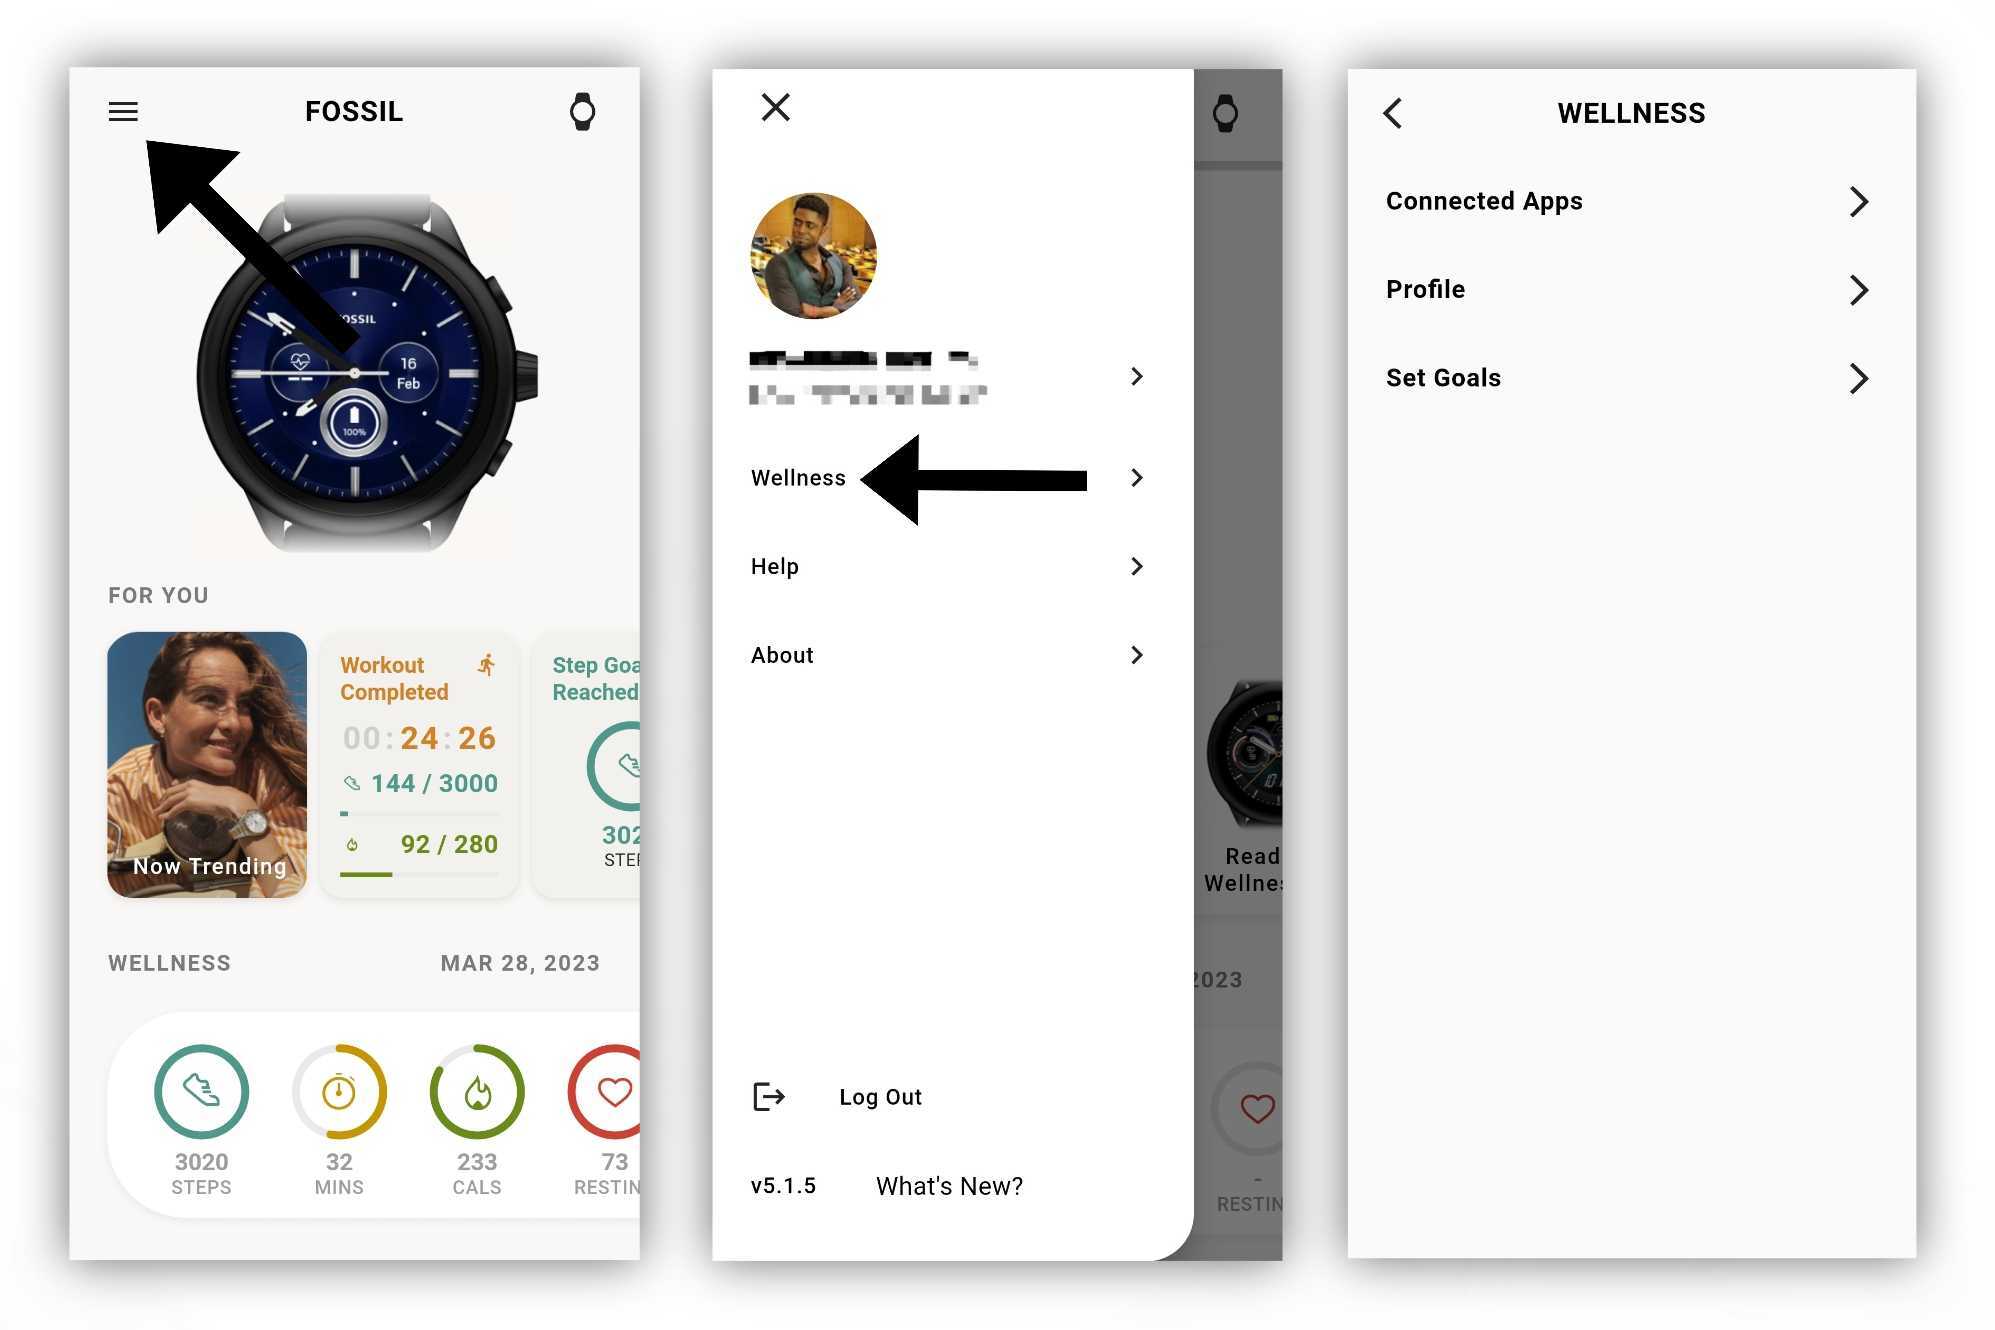 Editando su perfil de bienestar en la aplicación Fossil Smartwatches